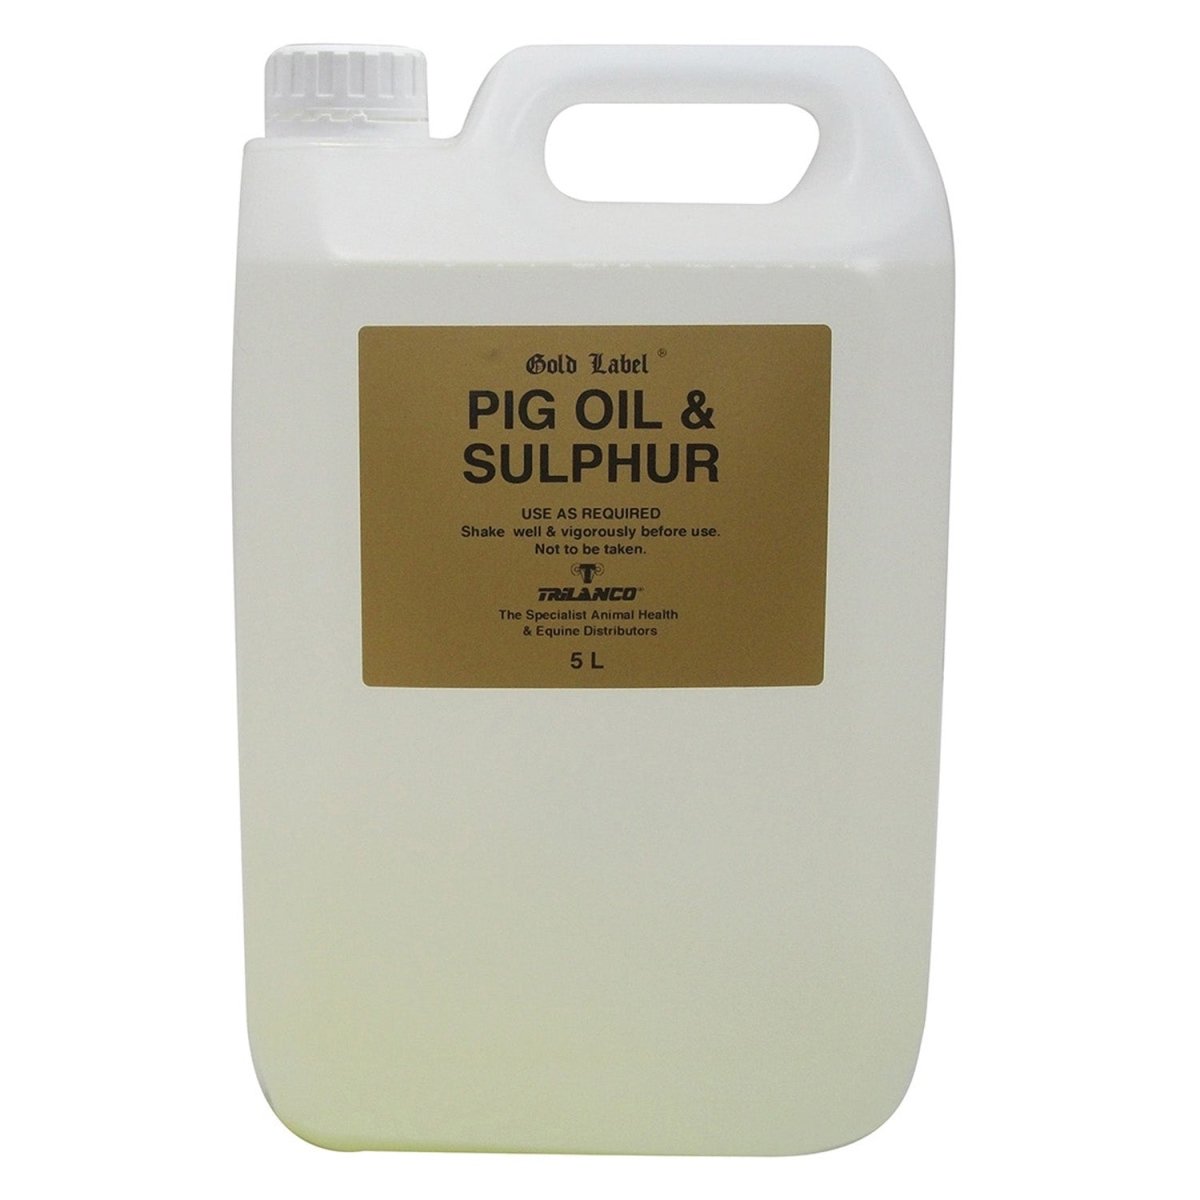 Gold Label Pig Oil & Sulphur - 5Lt -